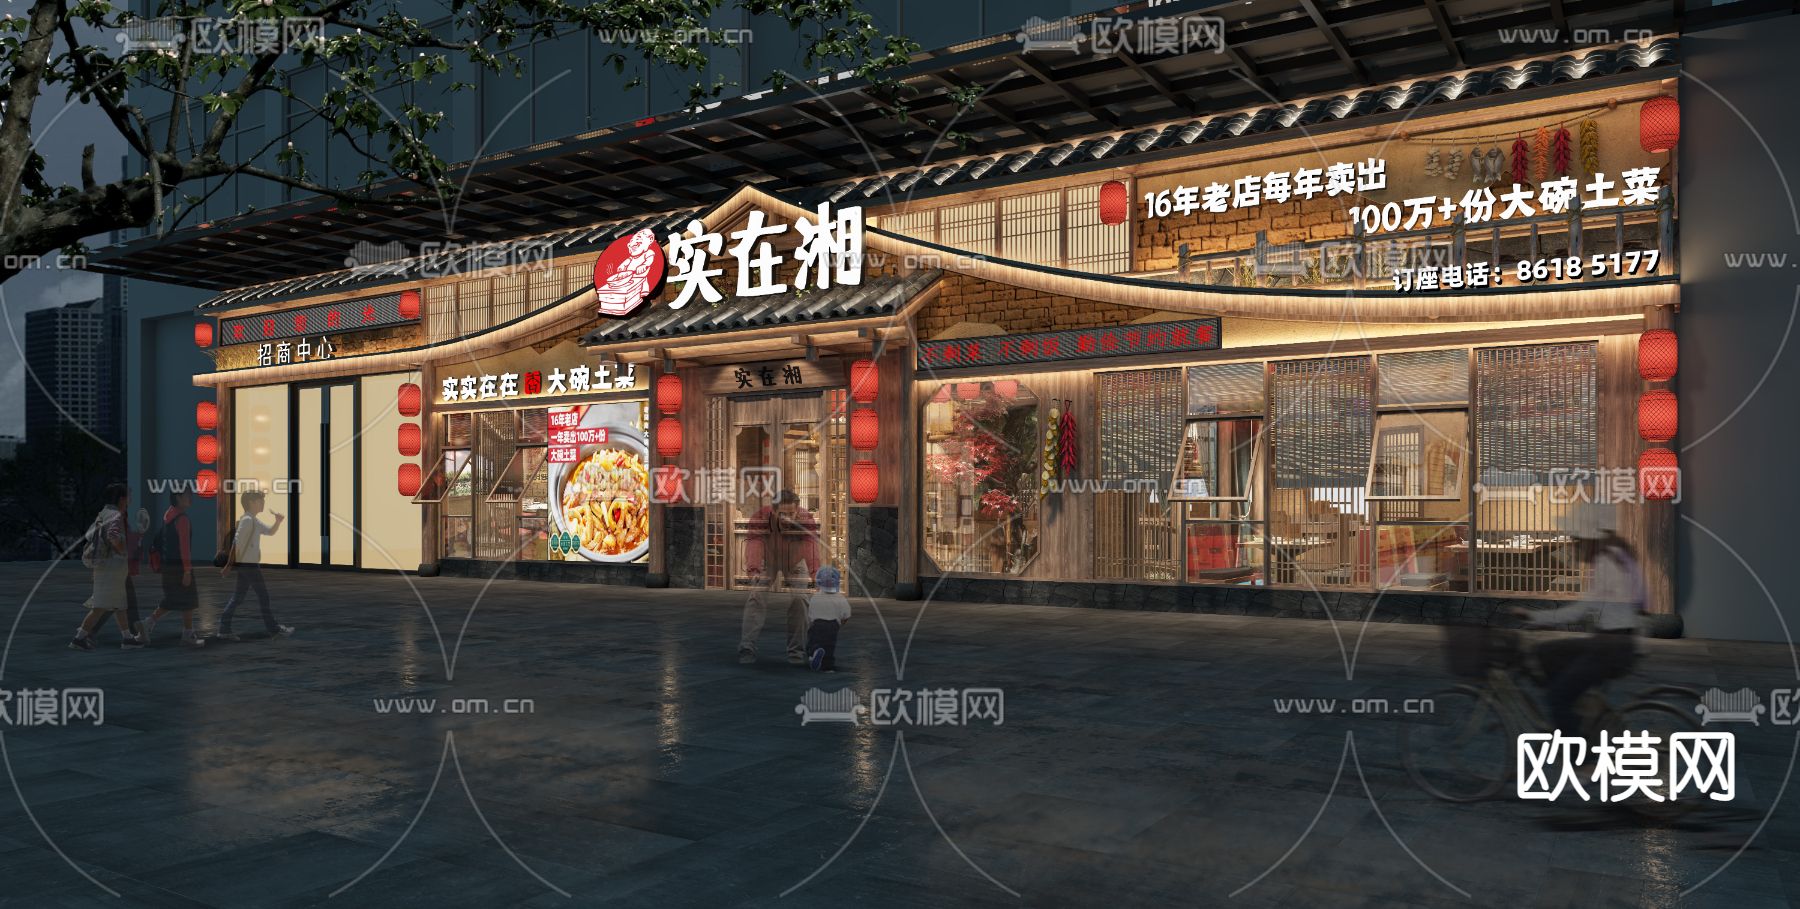 震撼!上海百乐门4.22重新开业,花费3年1.2亿,远东第一乐府回来啦!